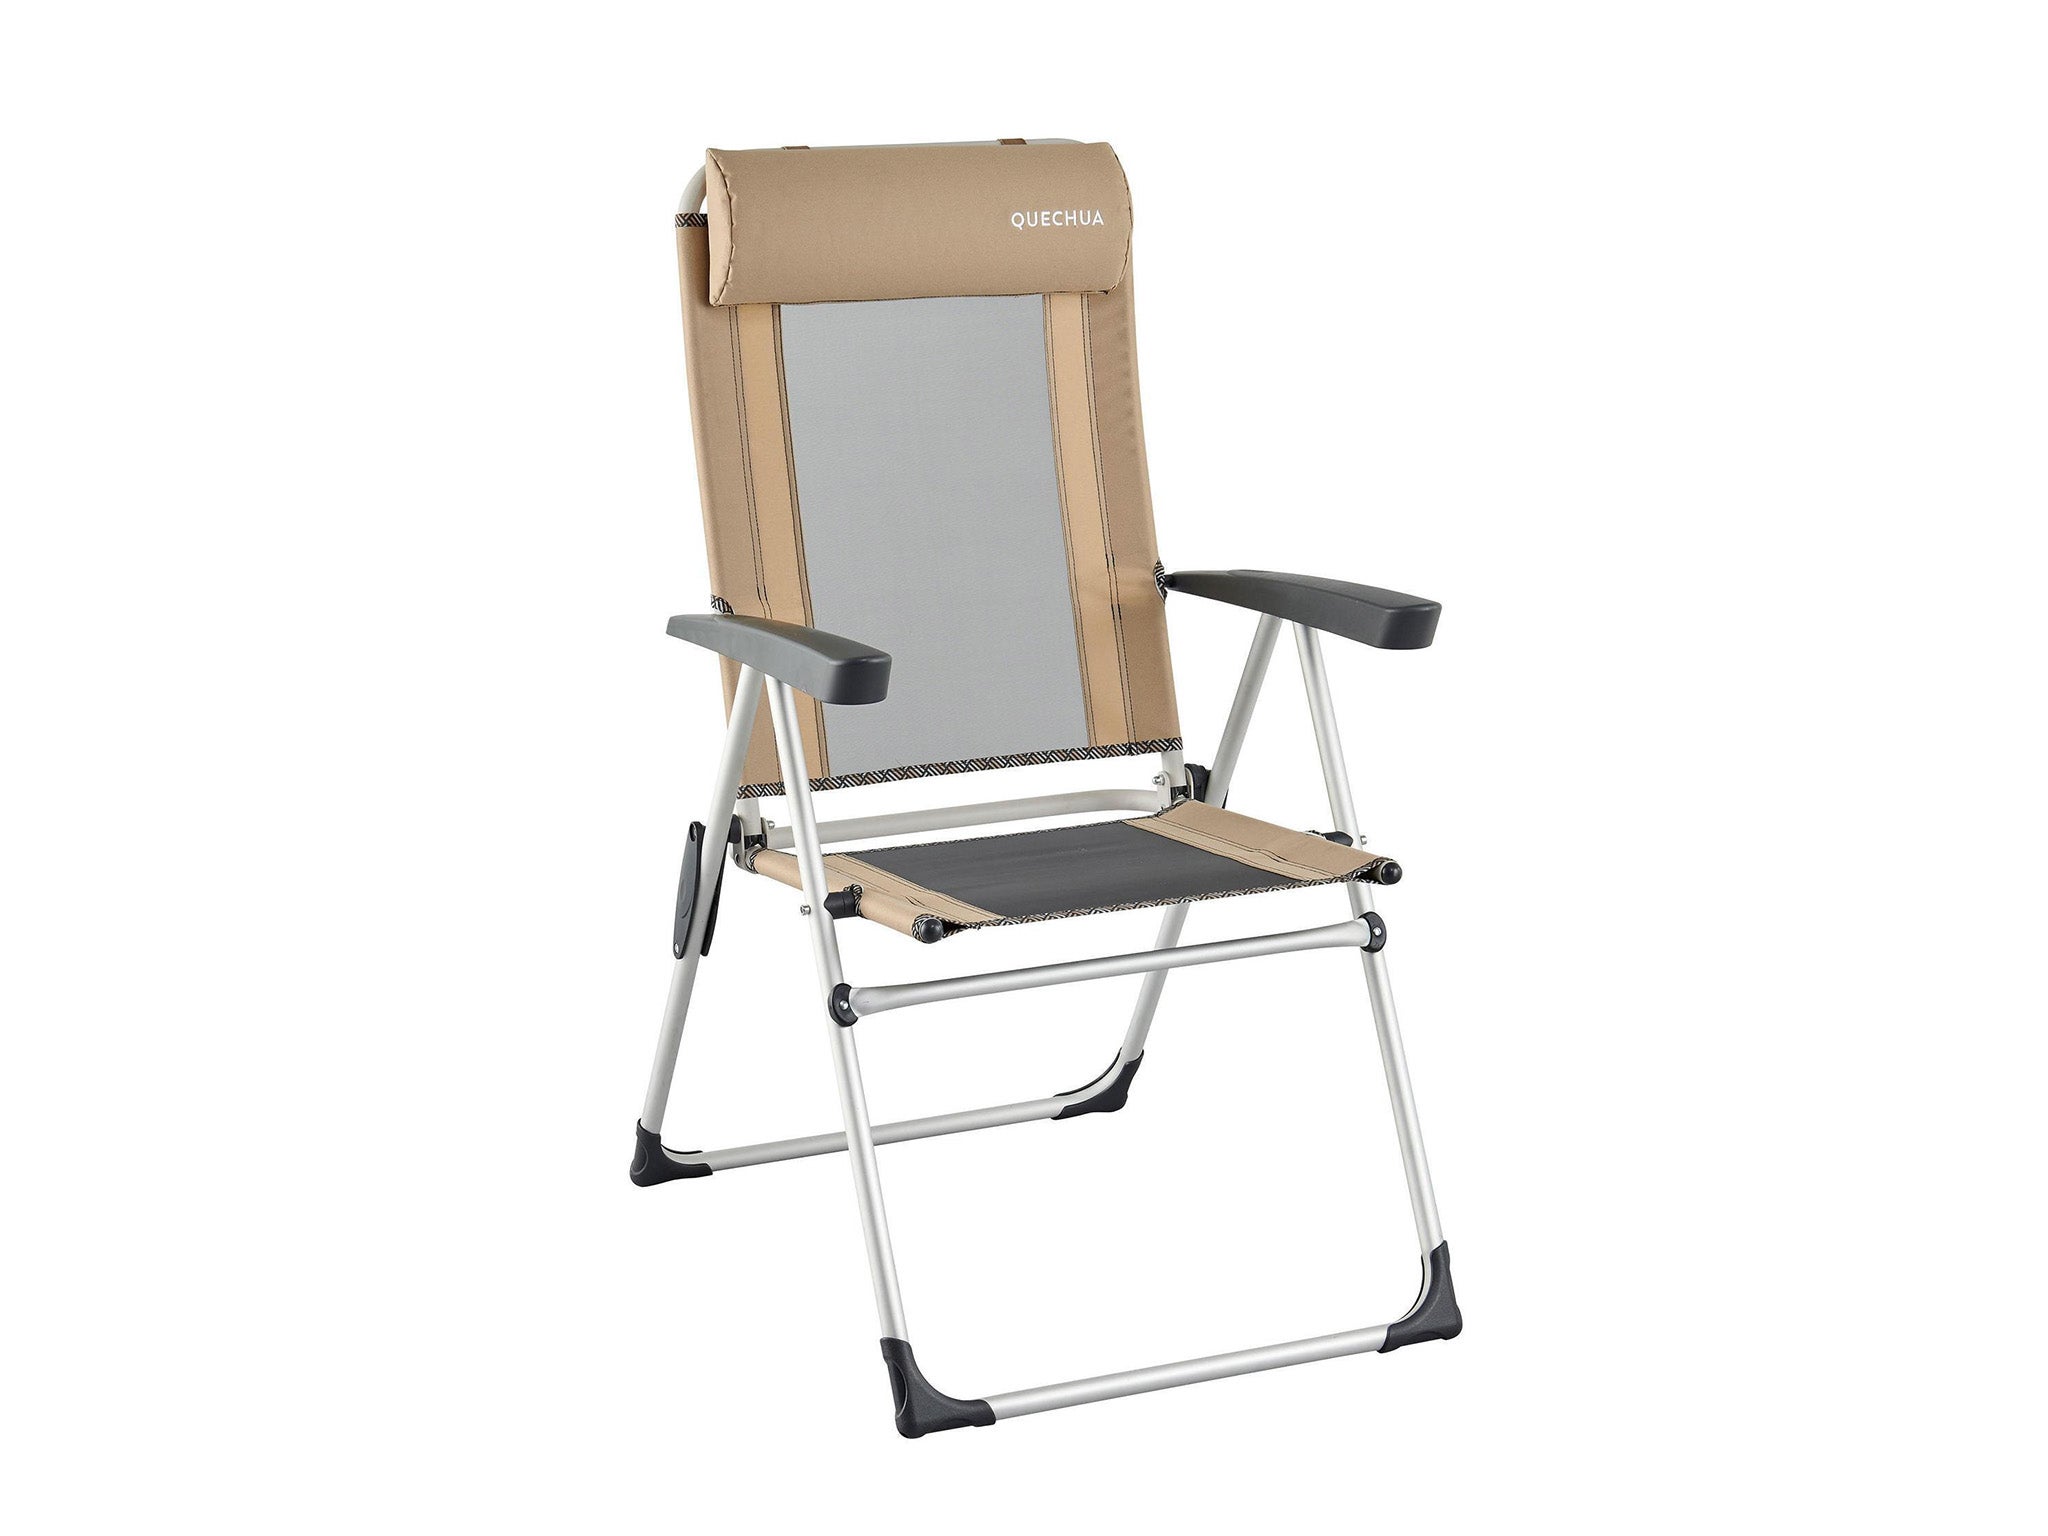 Quecha folding reclining camping chair